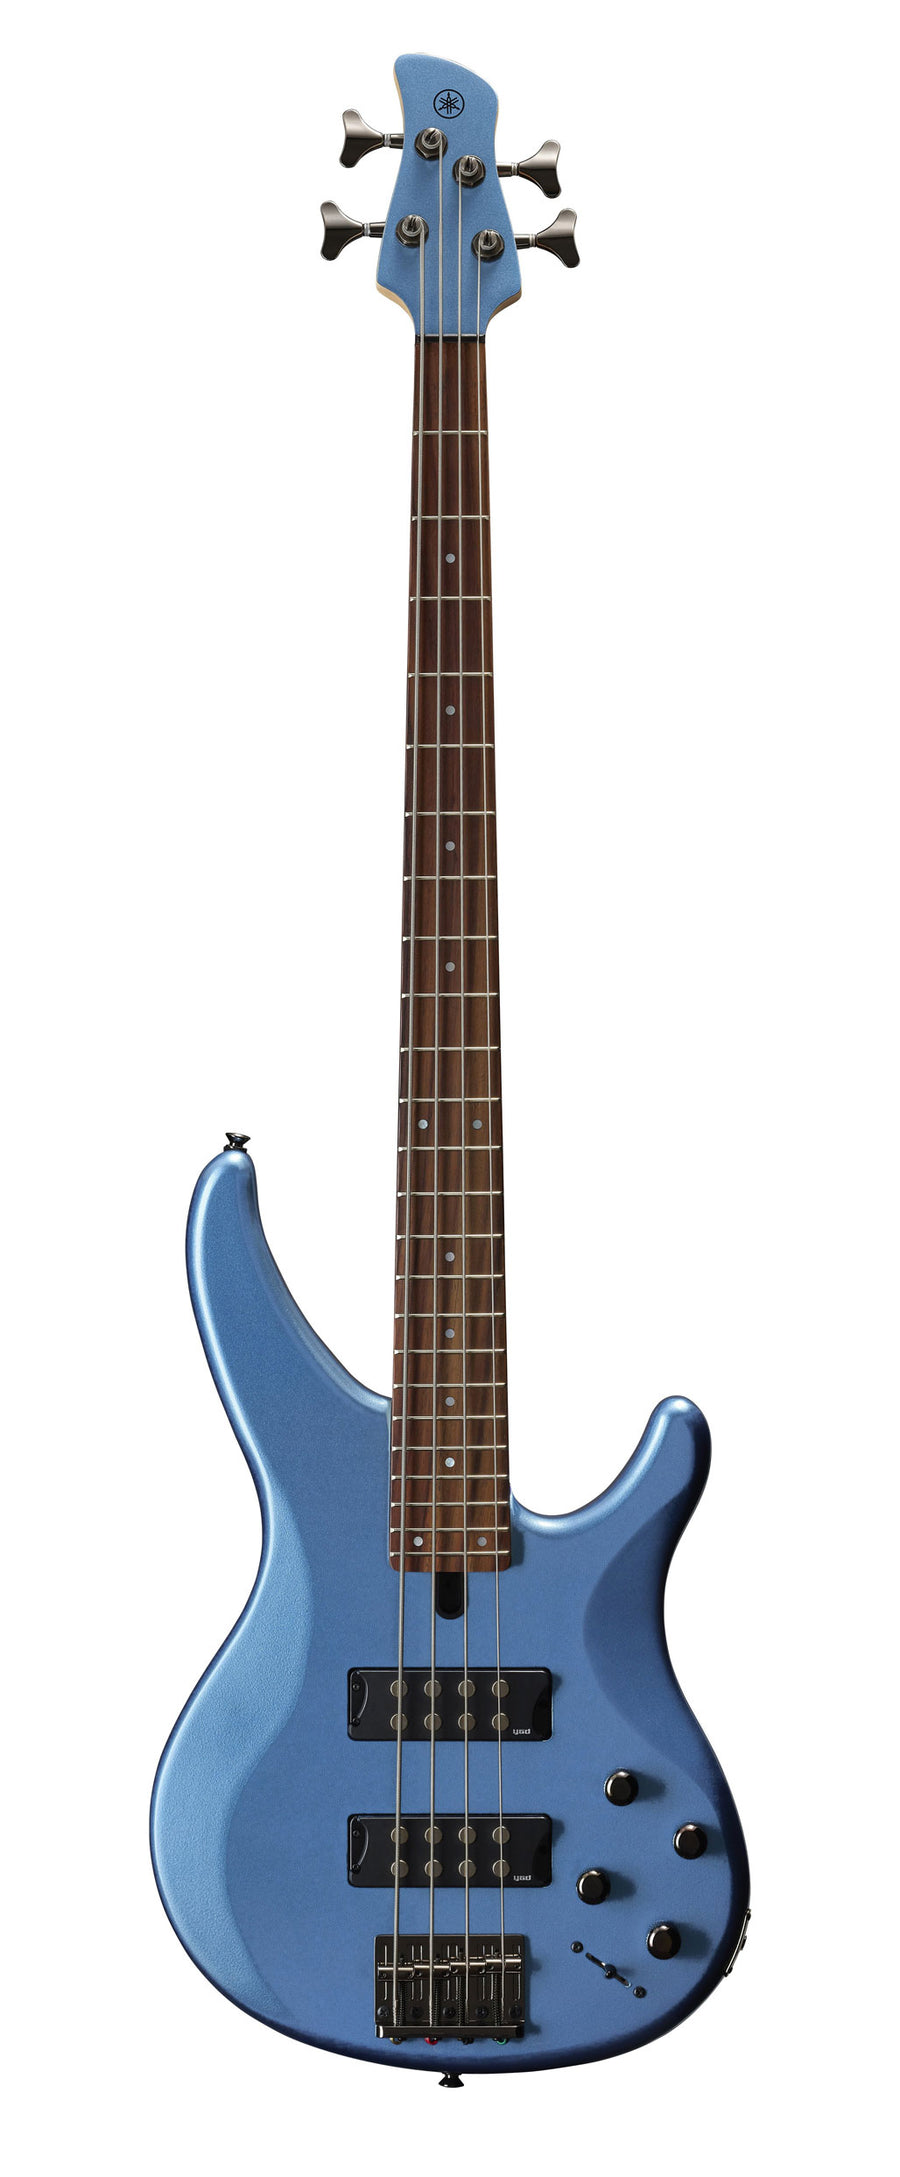 Yamaha TRBX304 4-String Bass Guitar - Factory Blue